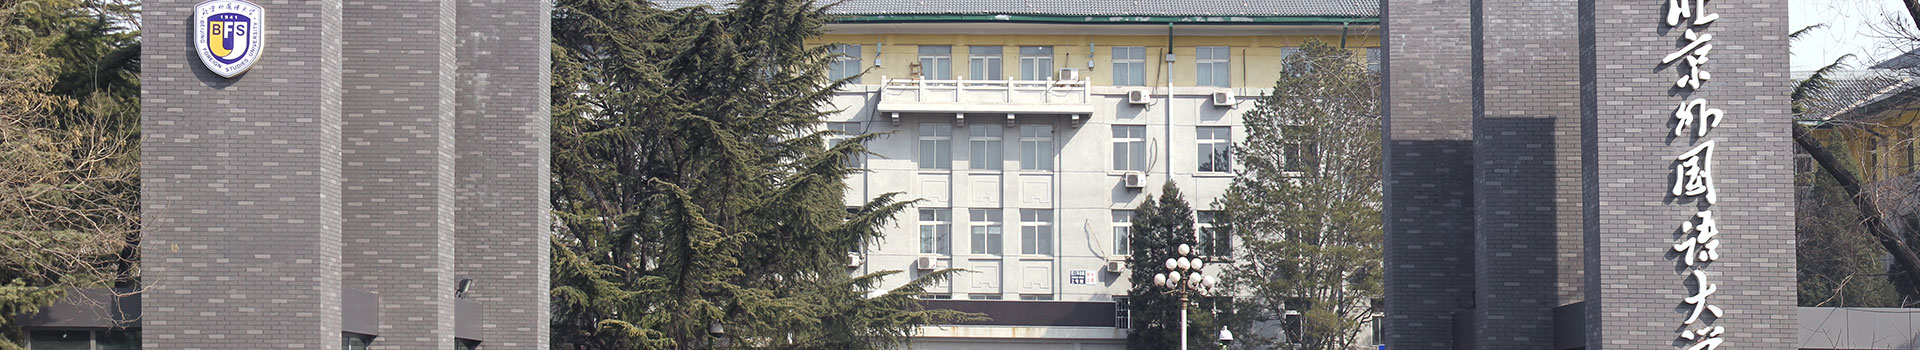 北京外国语大学俄罗斯留学预科中心